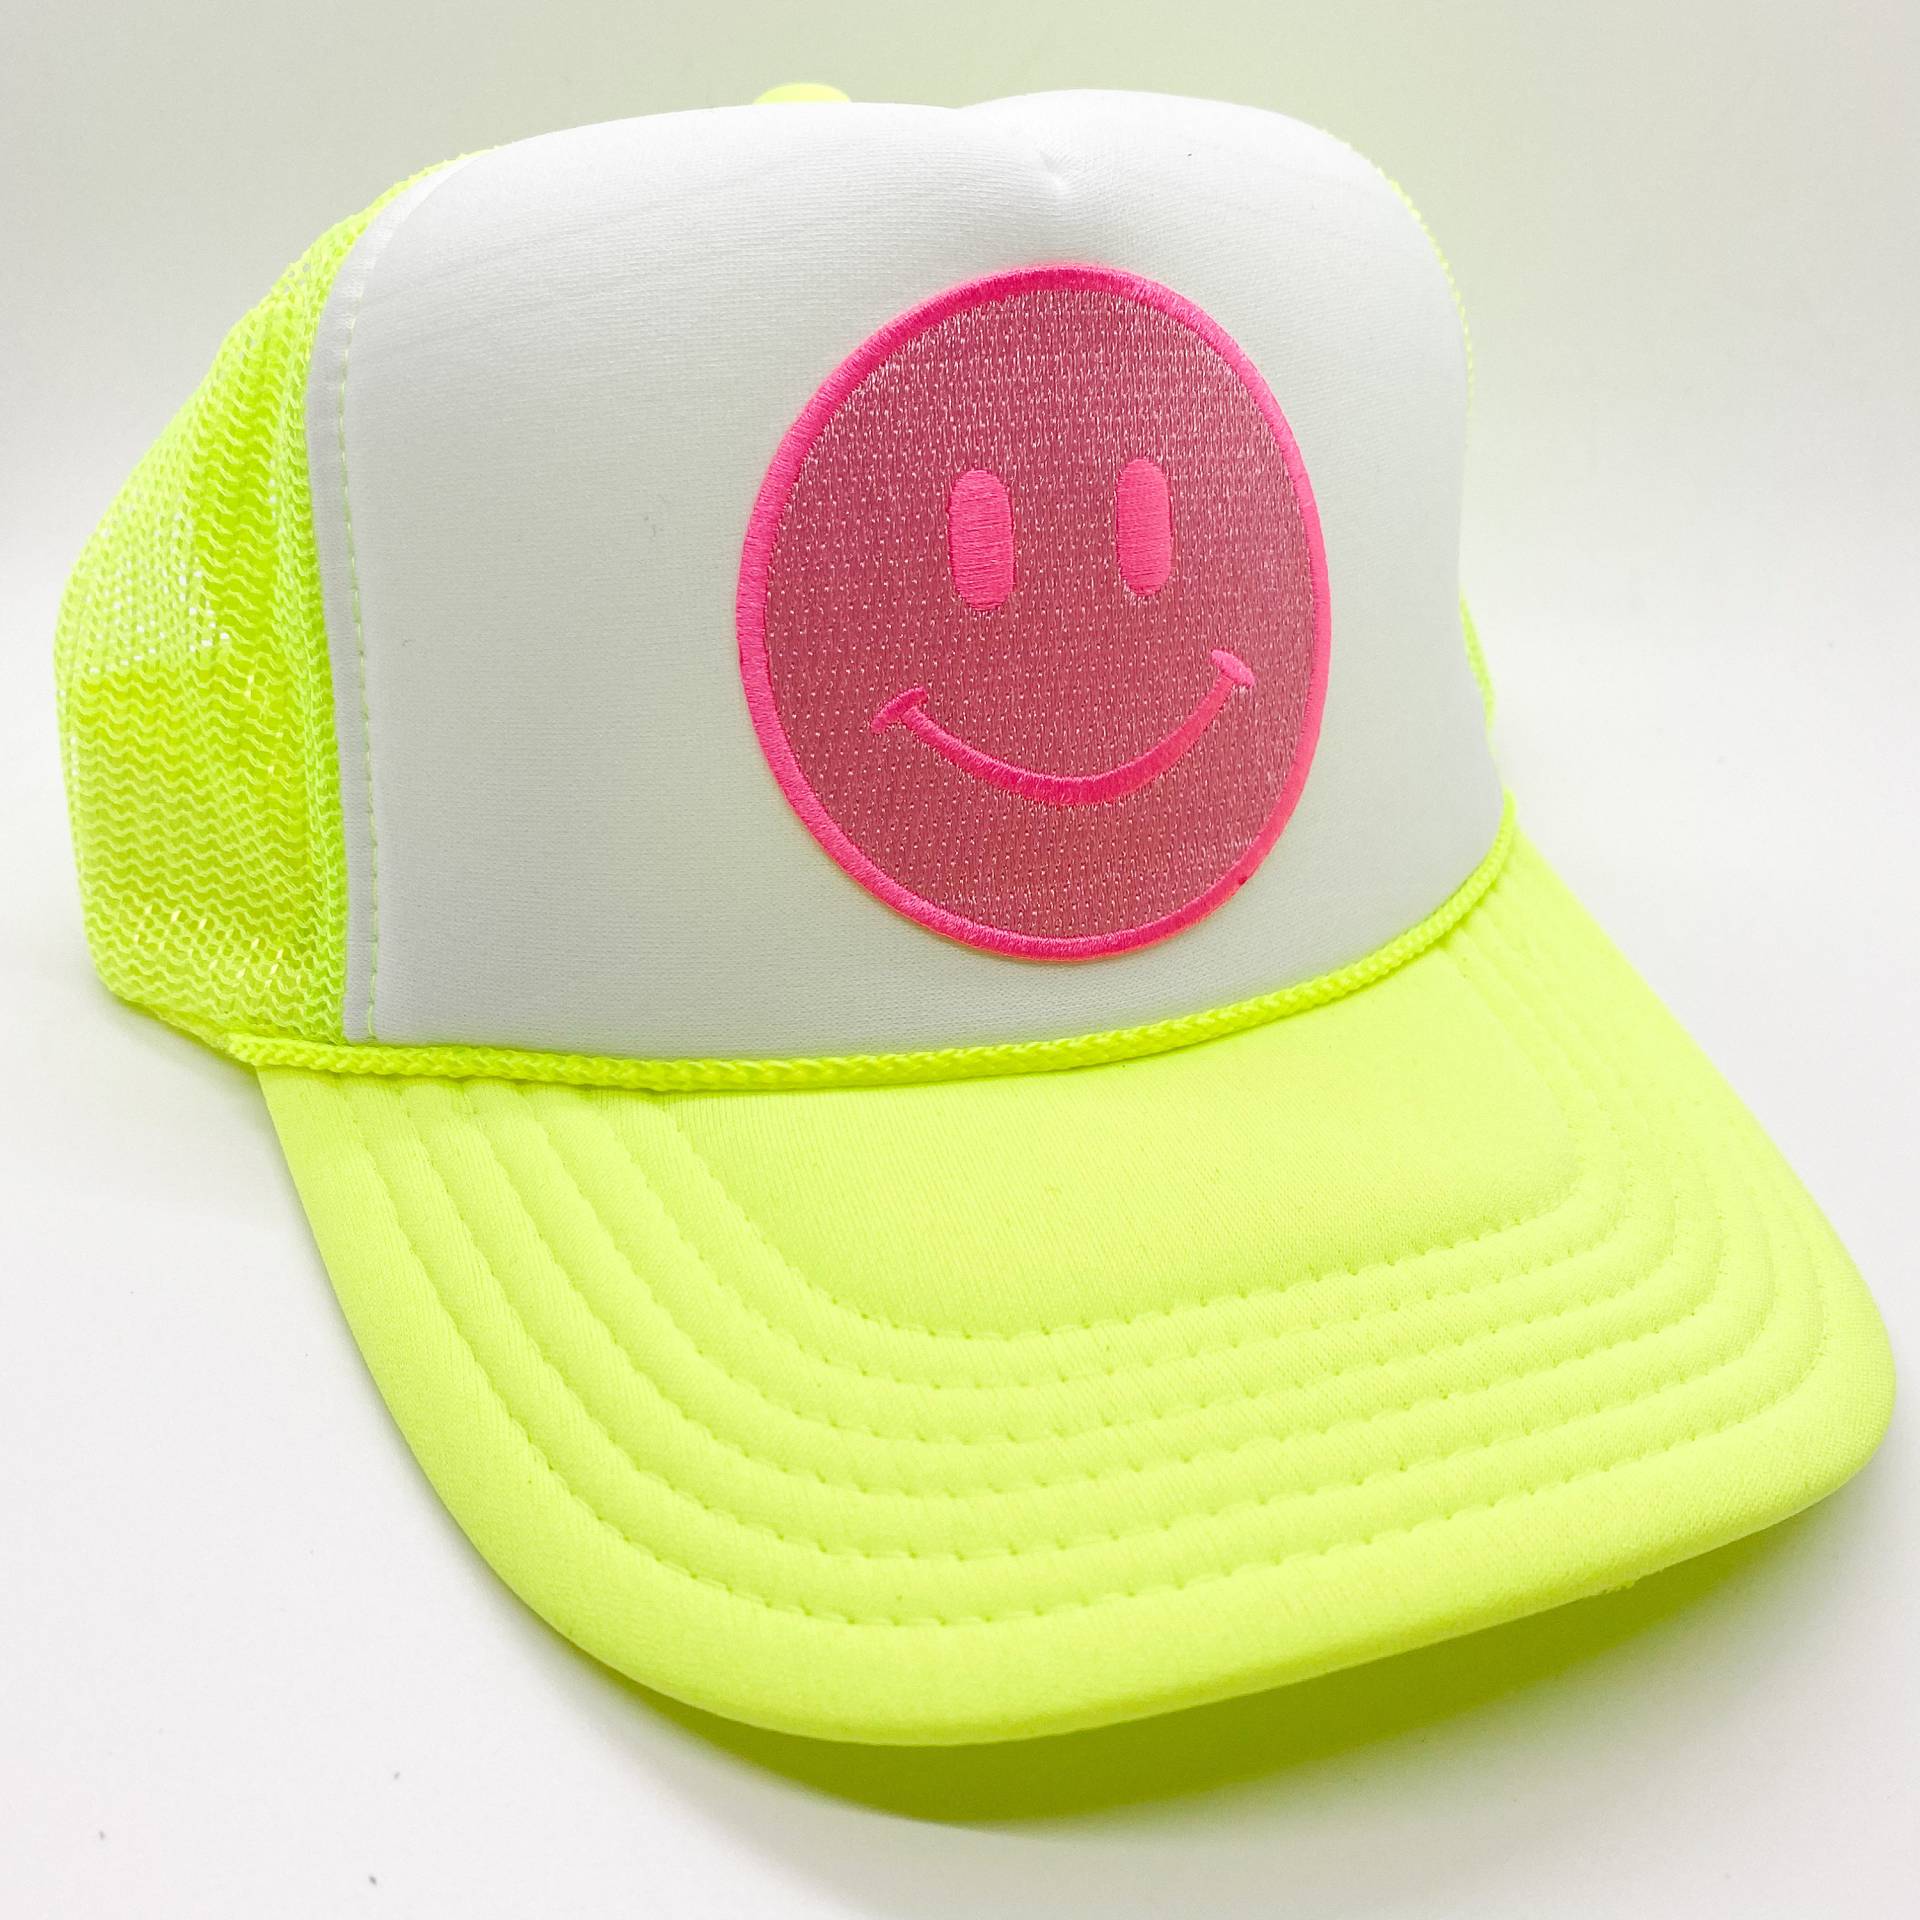 Neon Gelb & Weiß Happy Face Trucker Hat | Smile Patch Hut Lächelnder Mütze Aus Schaumstoff Unisex Ball Cap Baseball von XOKendallCo